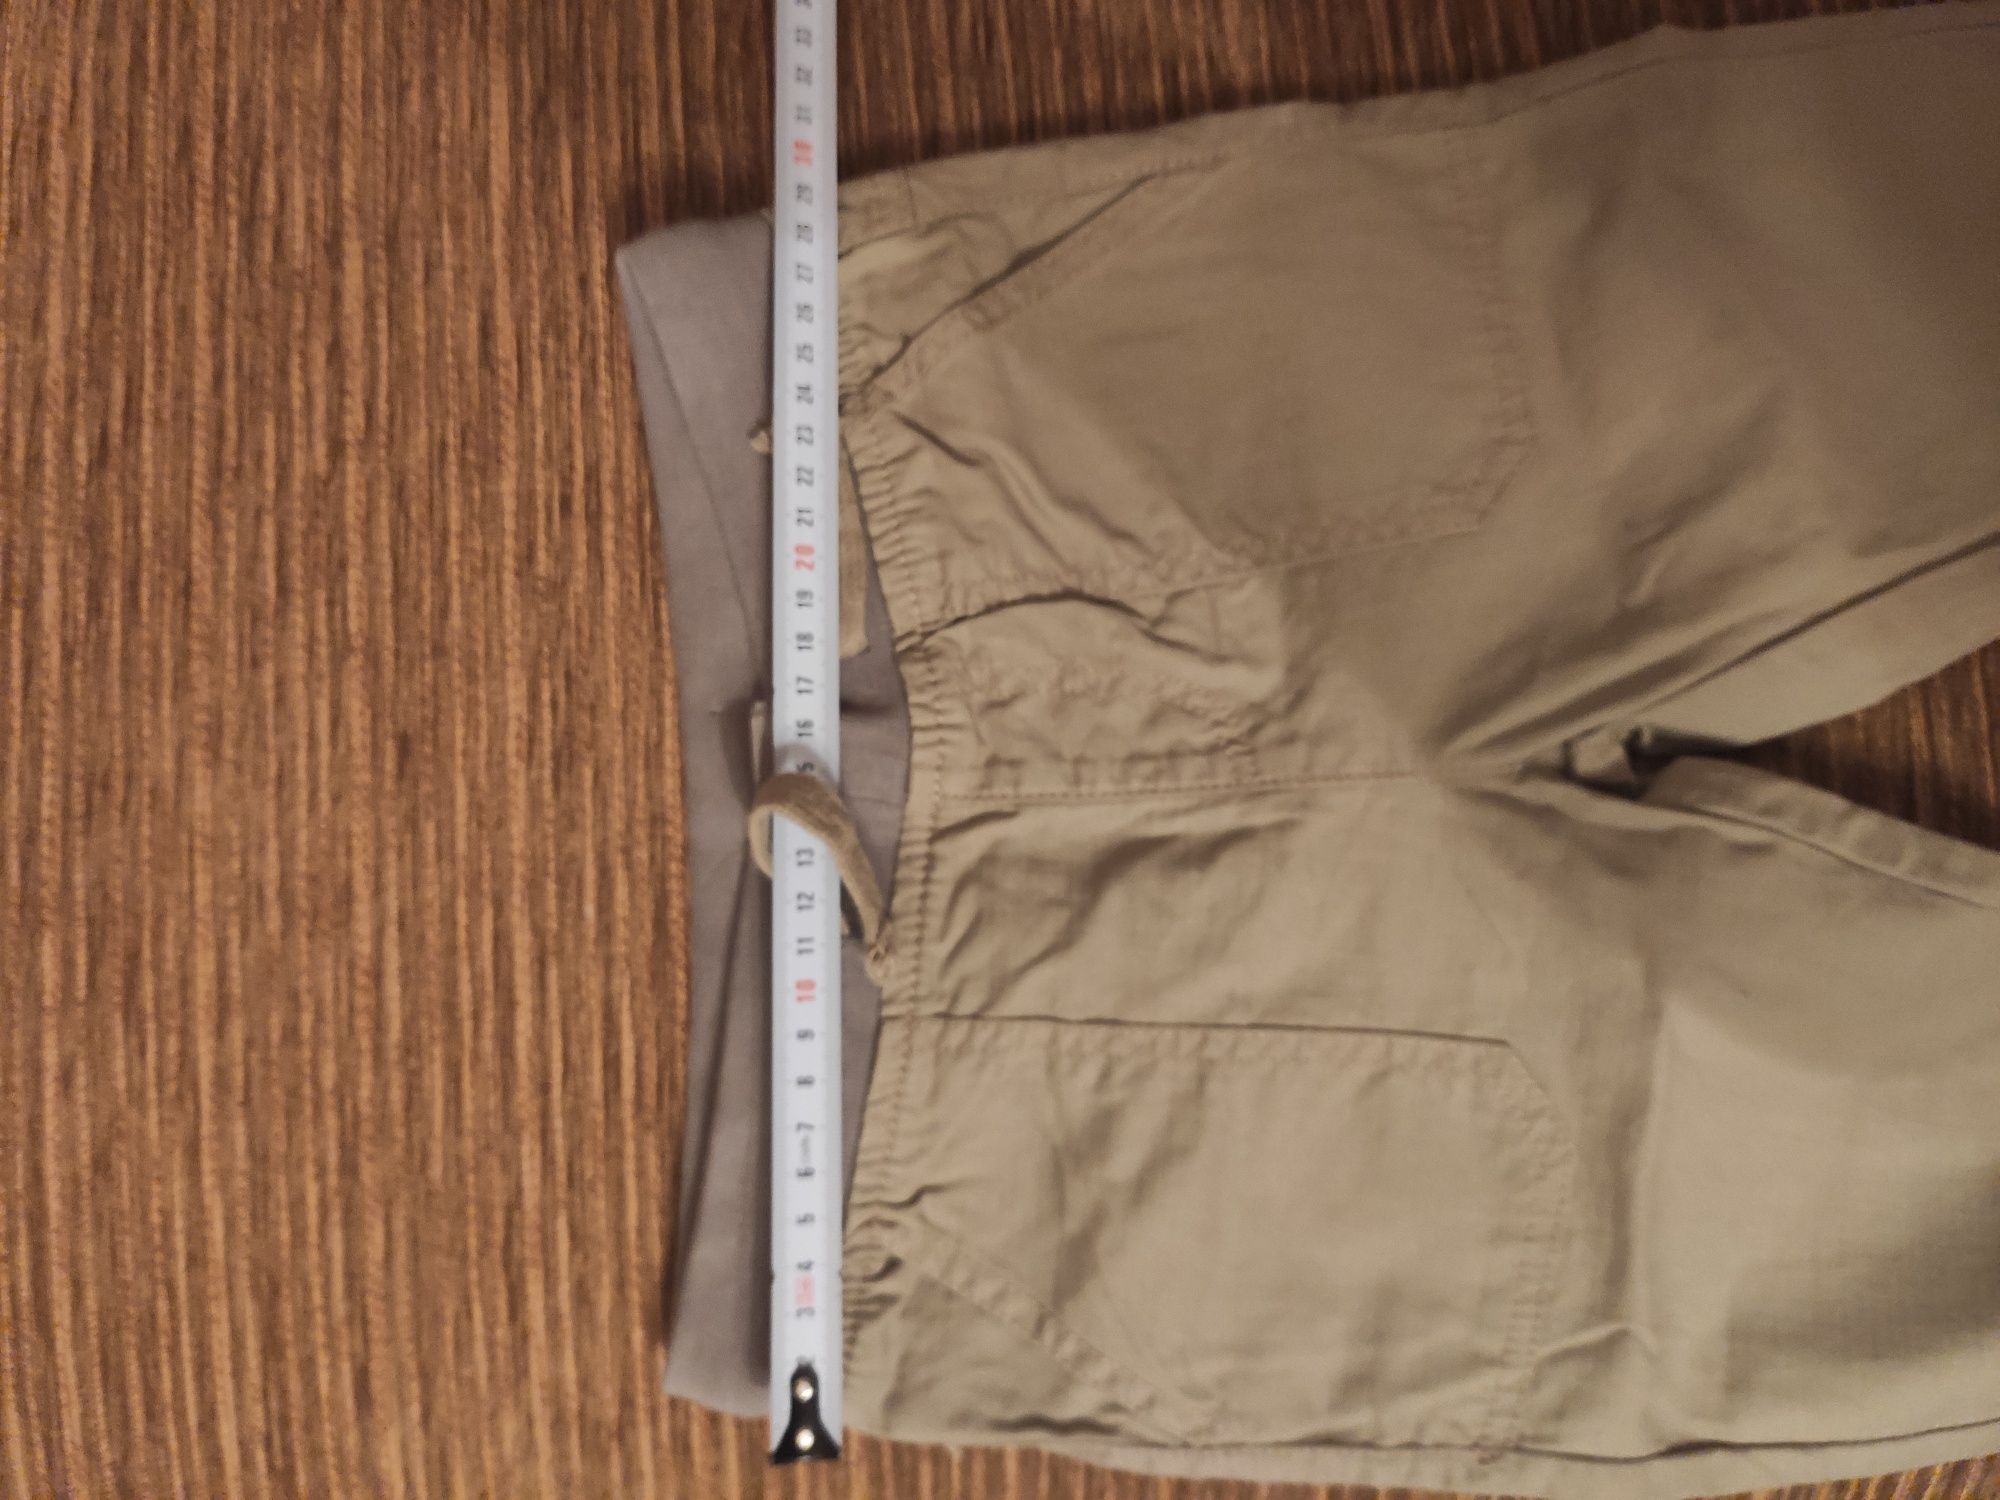 Spodnie spodenki letnie materiałowe 104